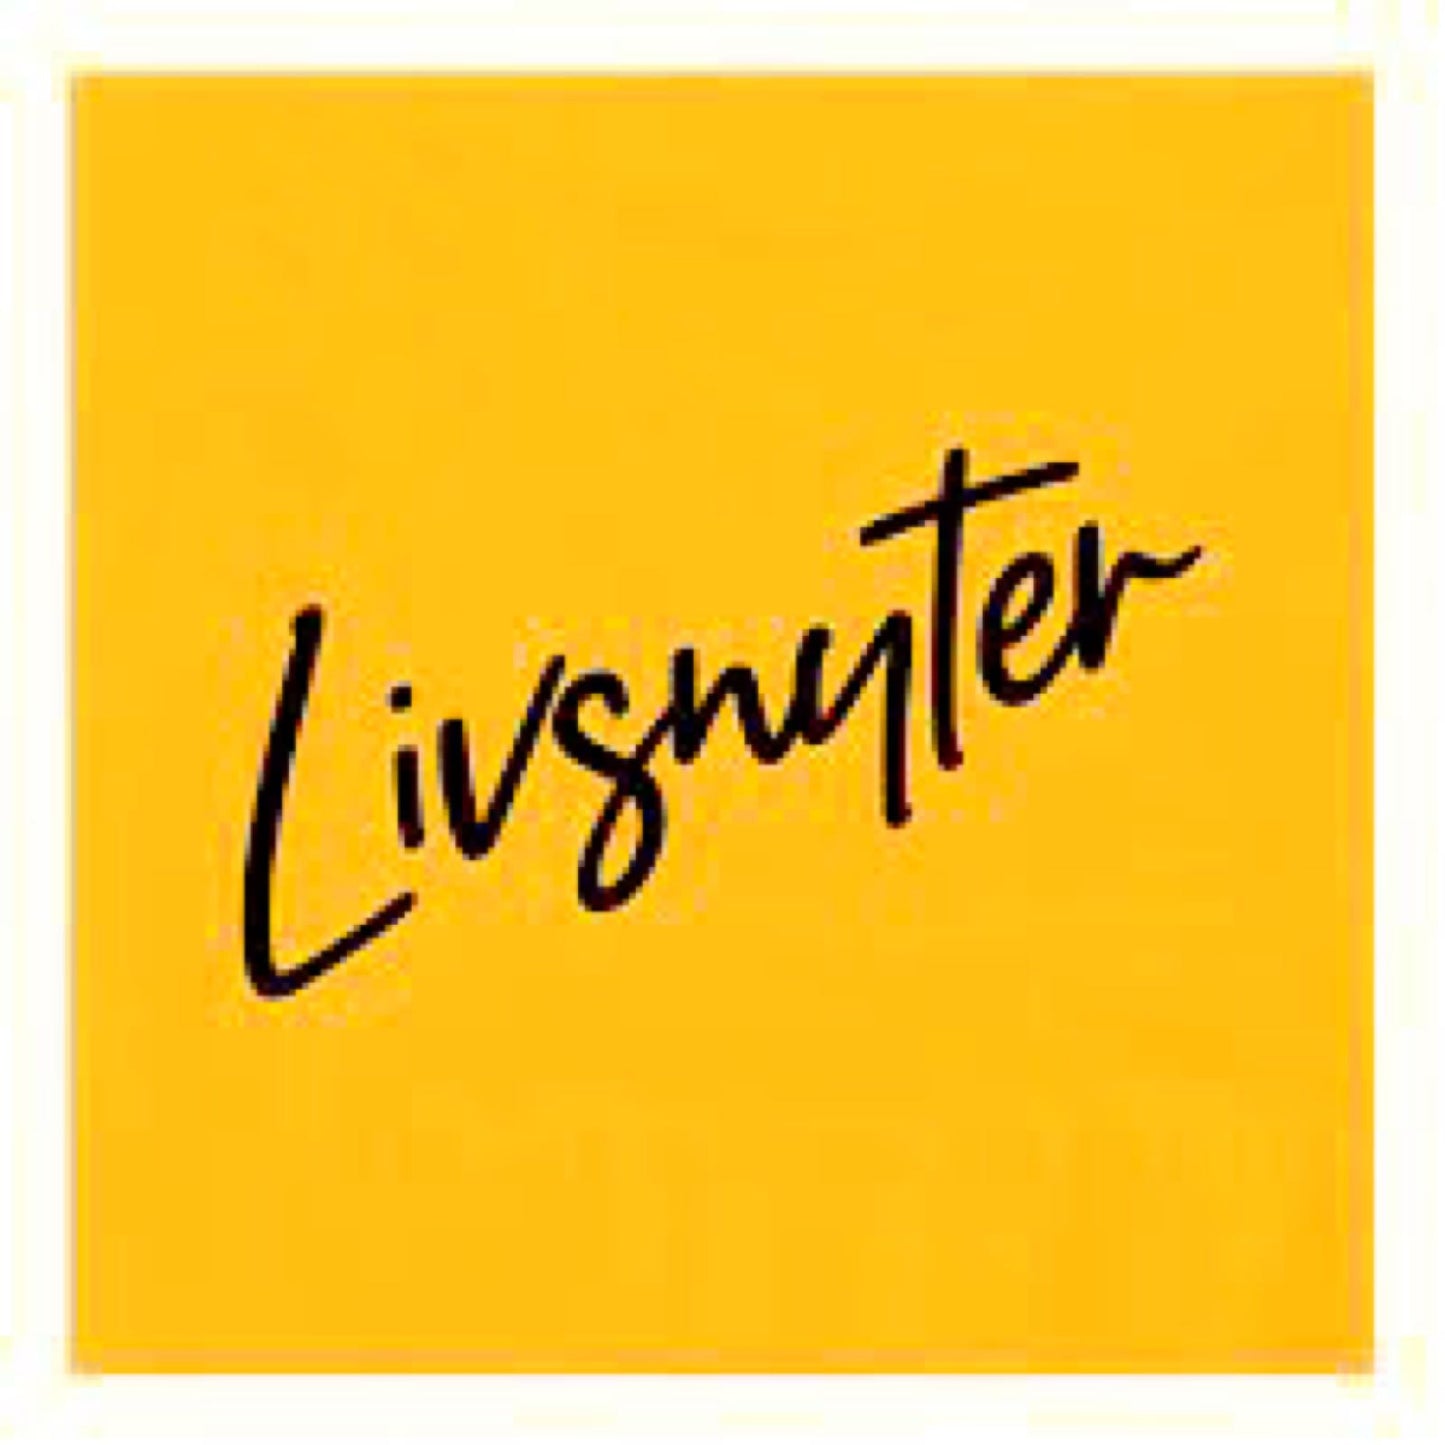 Servietter - Livsnyter 20  stk pk